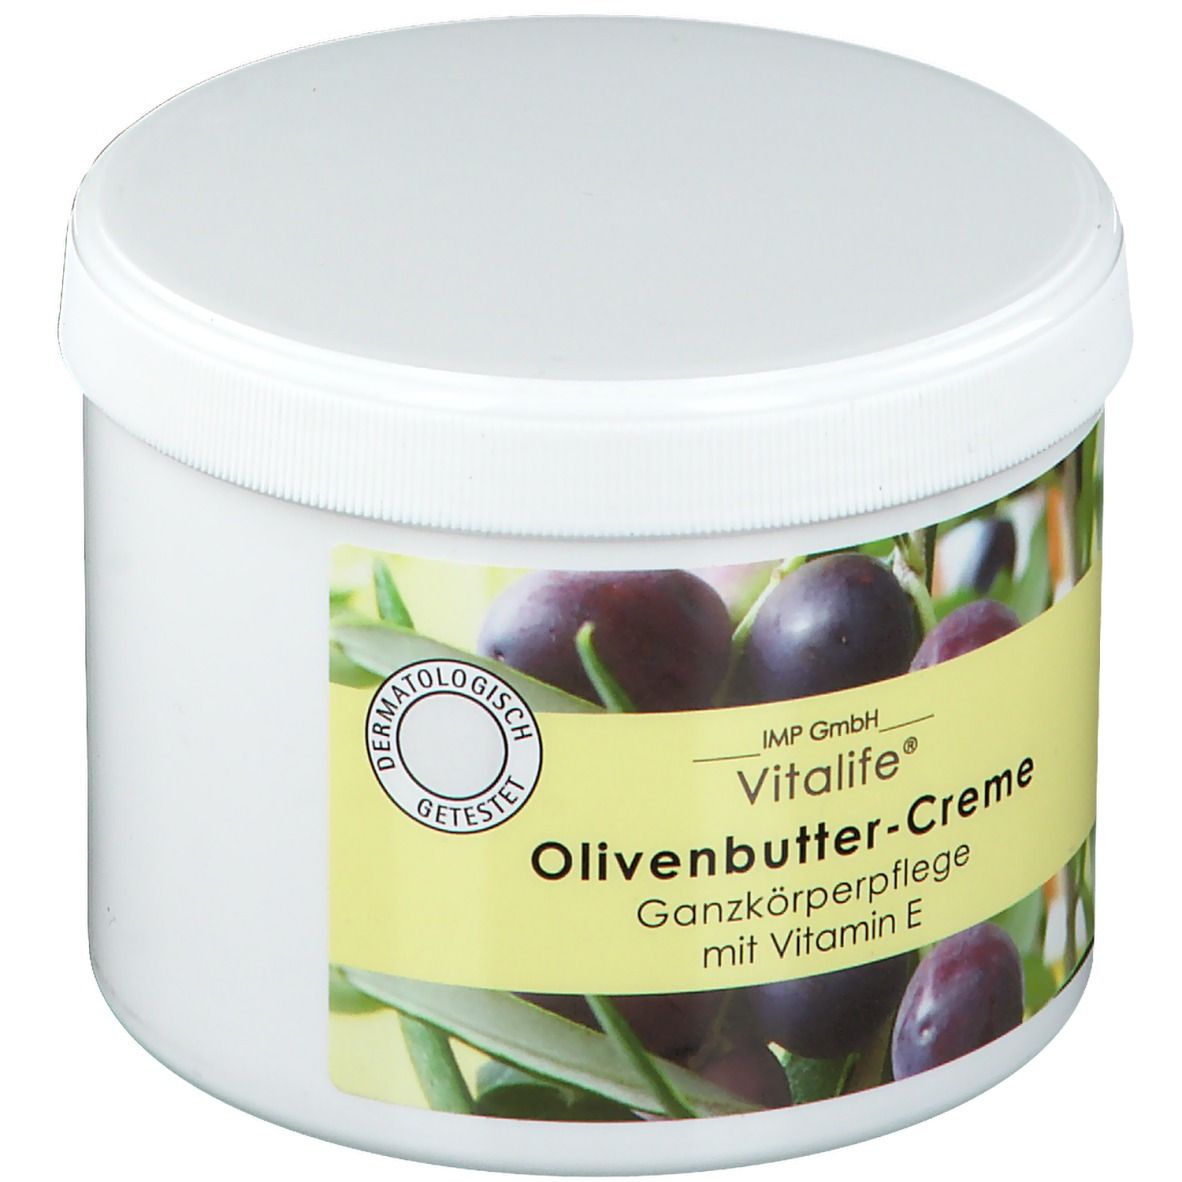 Vitalife® Olivenbutter-Creme